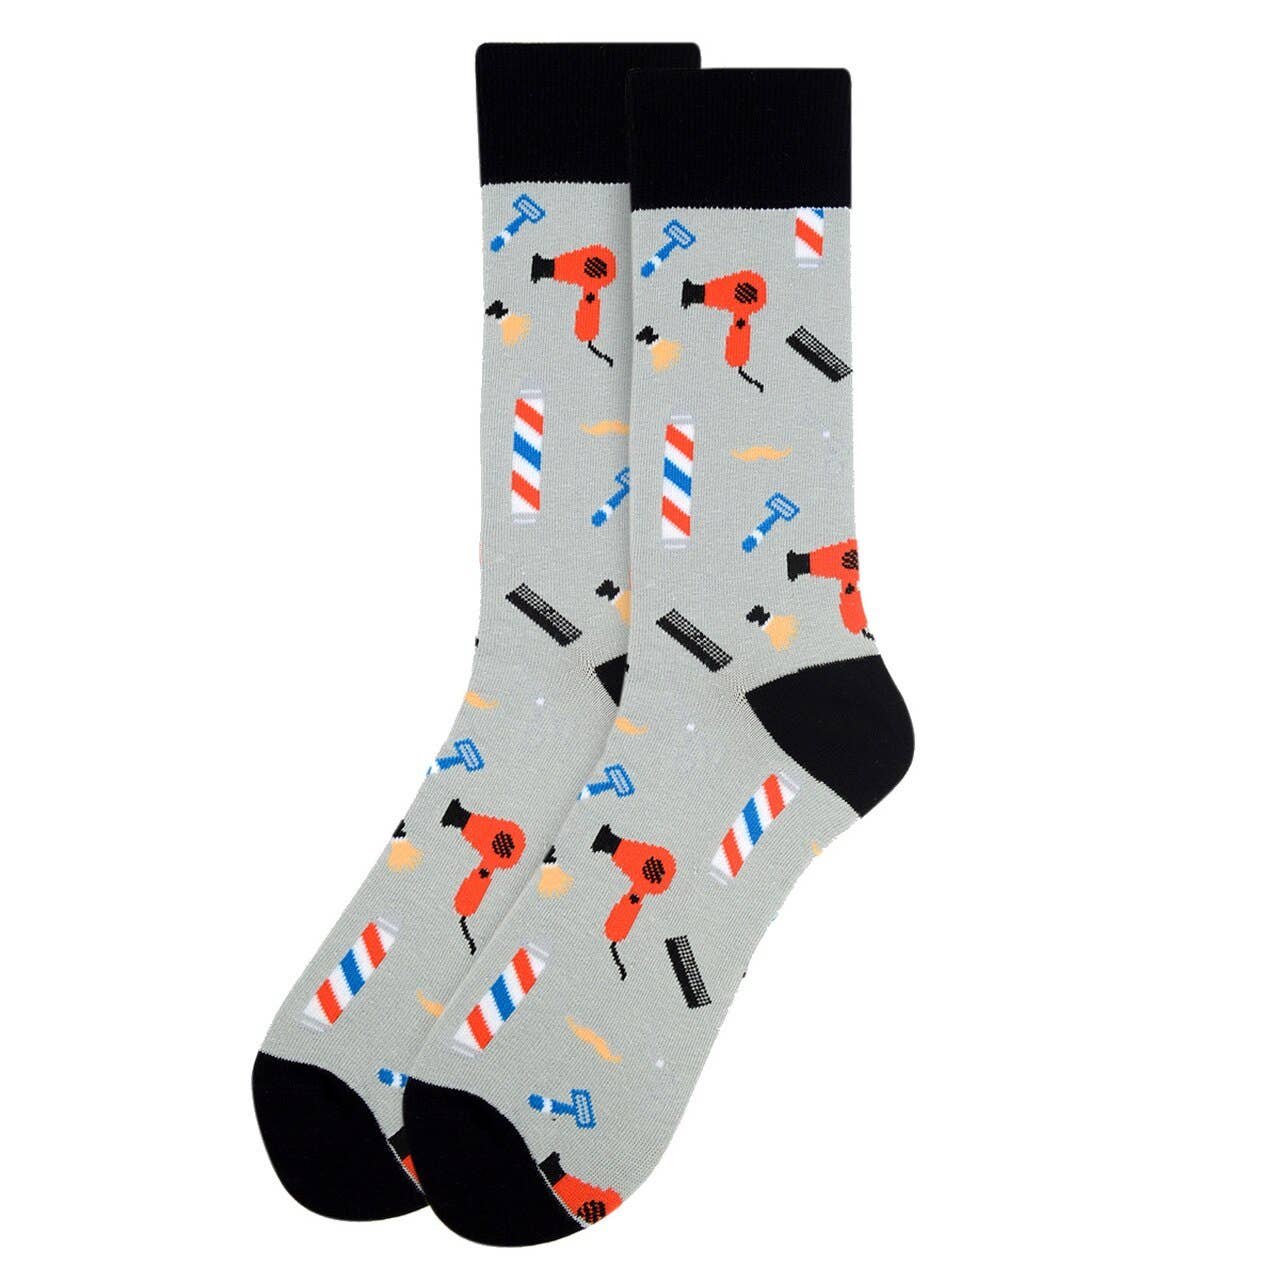 Parquet - Barber Shop Socks for Men